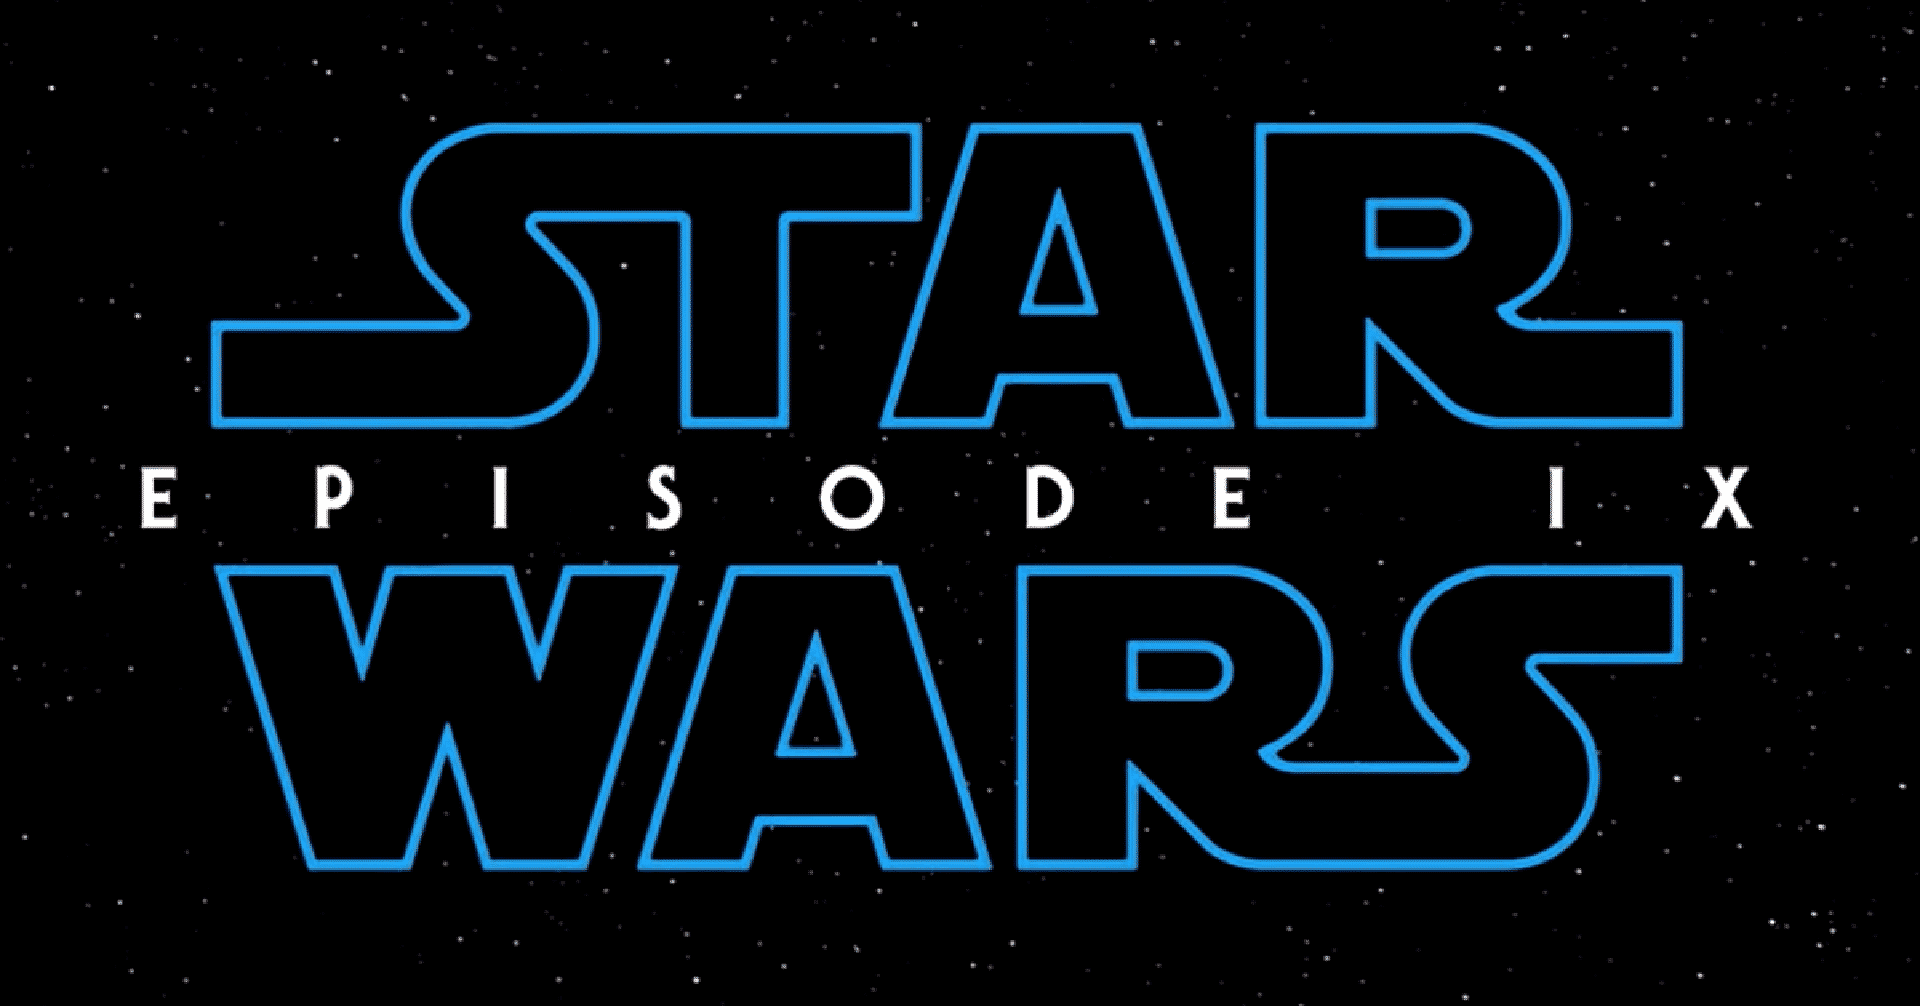 Star Wars: L’Ascesa di Skywalker – Il titolo giapponese è uno spoiler?